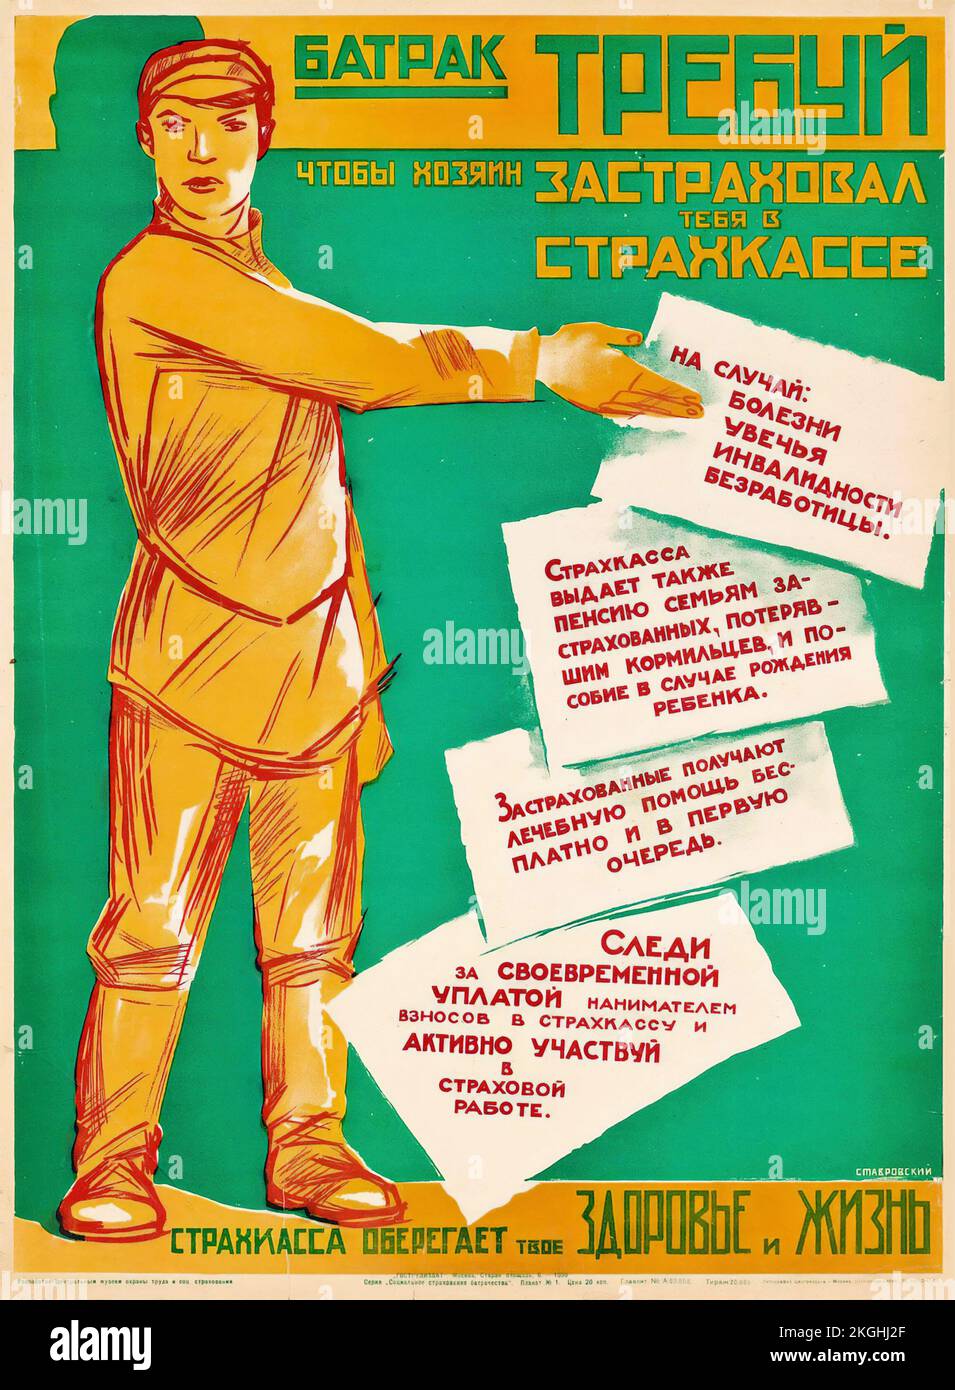 Artiste anonyme - WORKHAND, RÉCLAMATION D'ASSURANCE - affiche russe vintage 1930 Banque D'Images